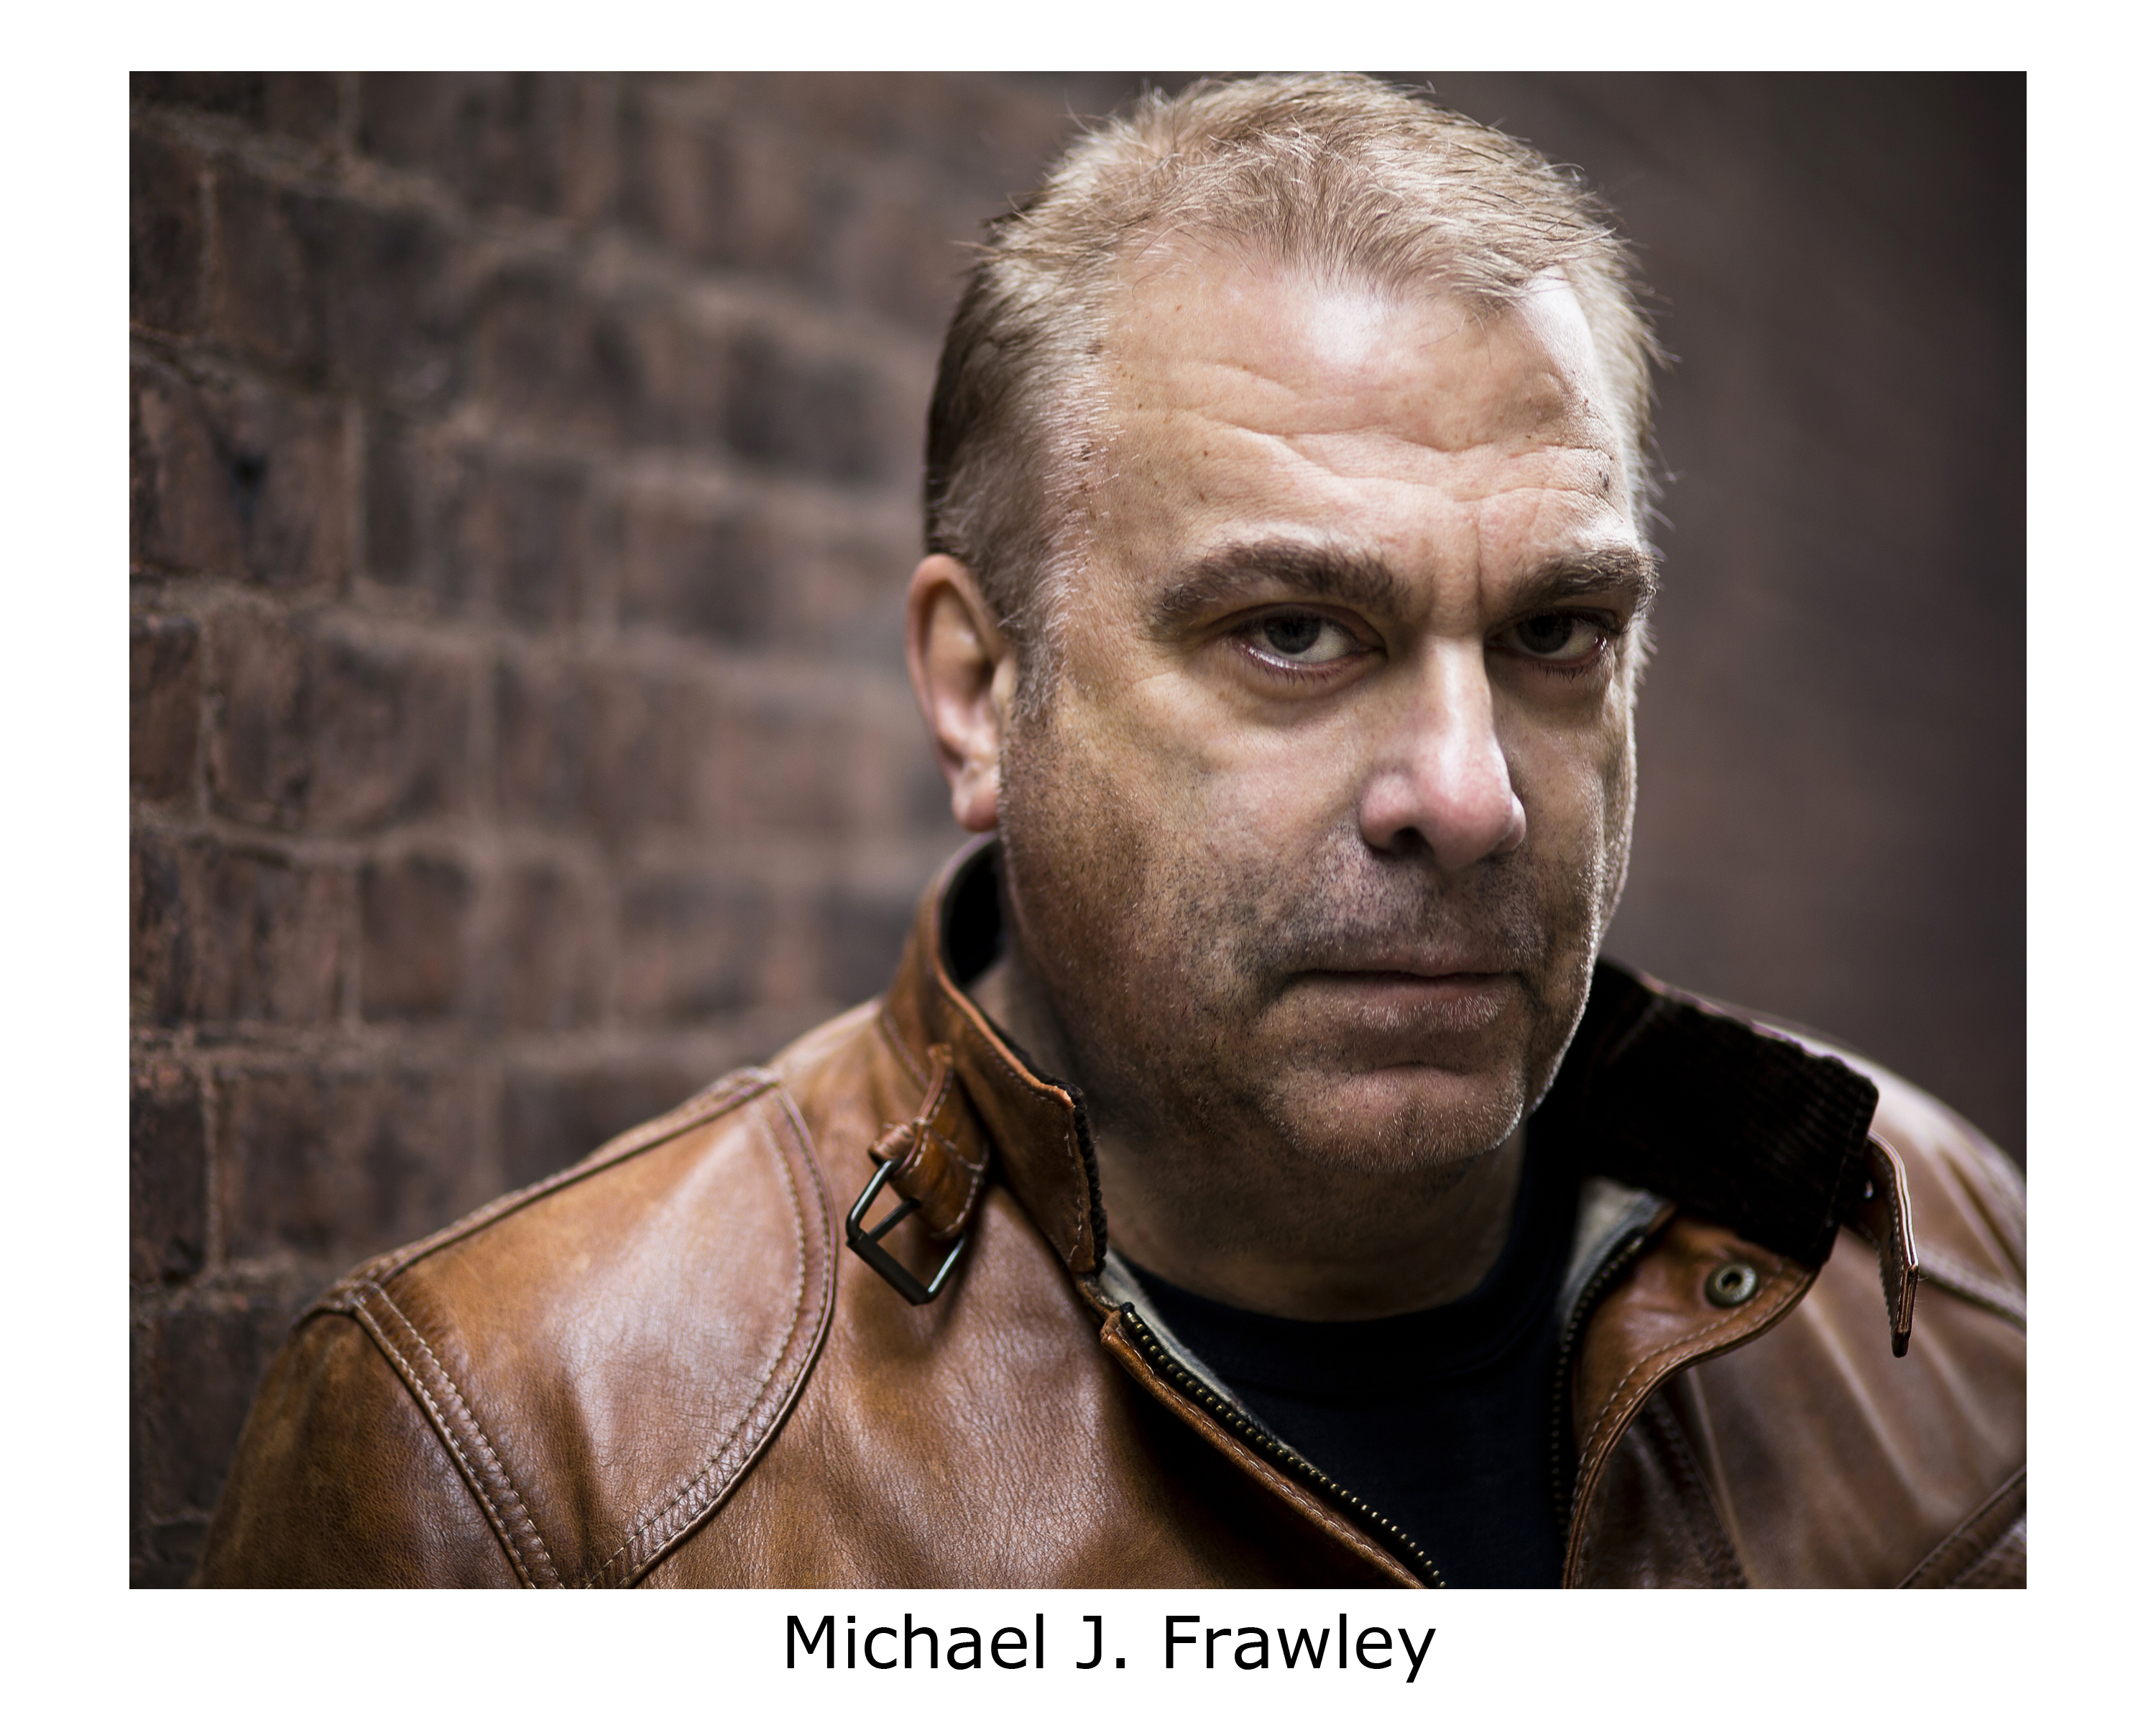 Michael Frawley